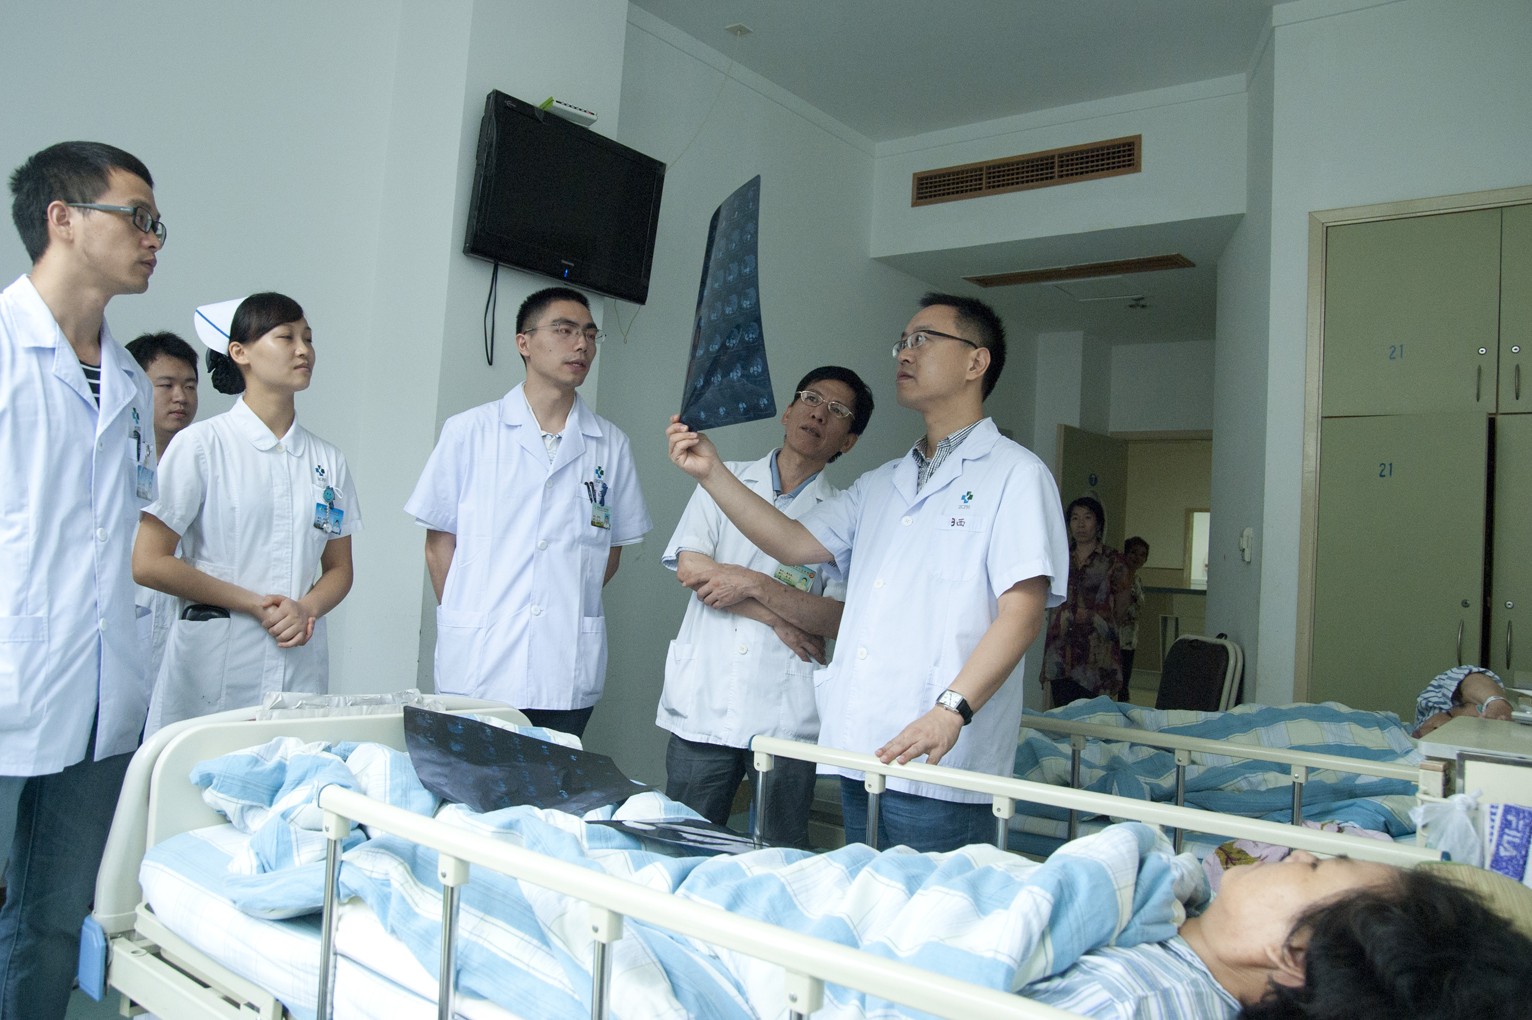 西苑医院全天优先跑腿代处理住院如患者入院24小时内转科由接收科室